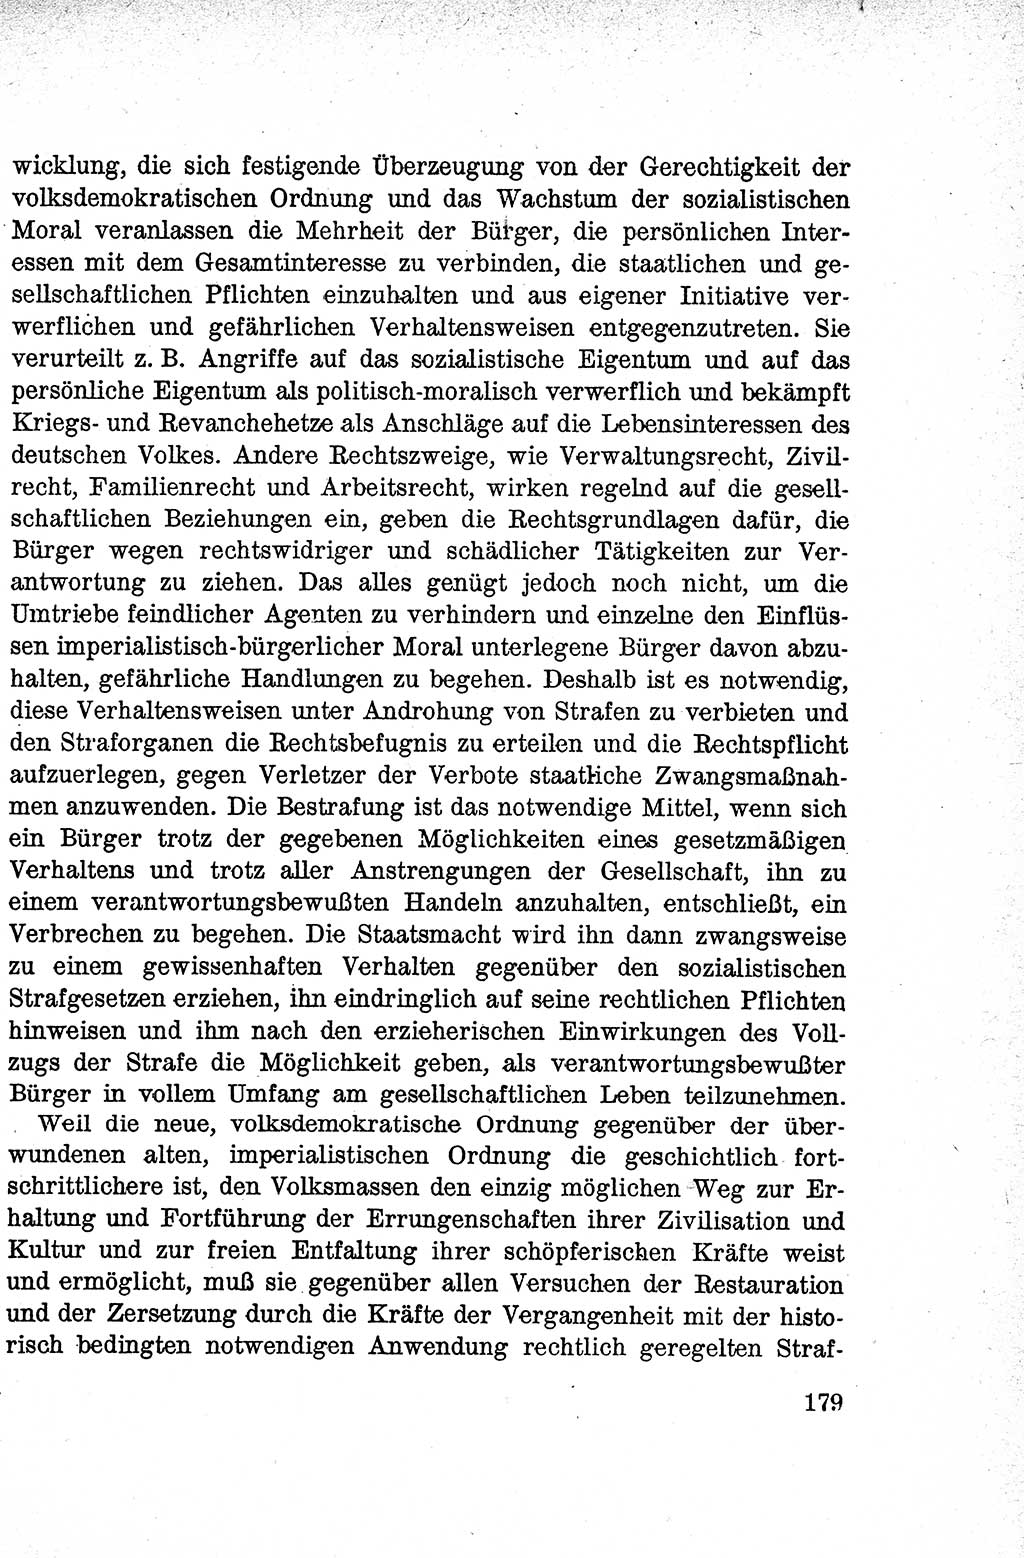 Lehrbuch des Strafrechts der Deutschen Demokratischen Republik (DDR), Allgemeiner Teil 1959, Seite 179 (Lb. Strafr. DDR AT 1959, S. 179)